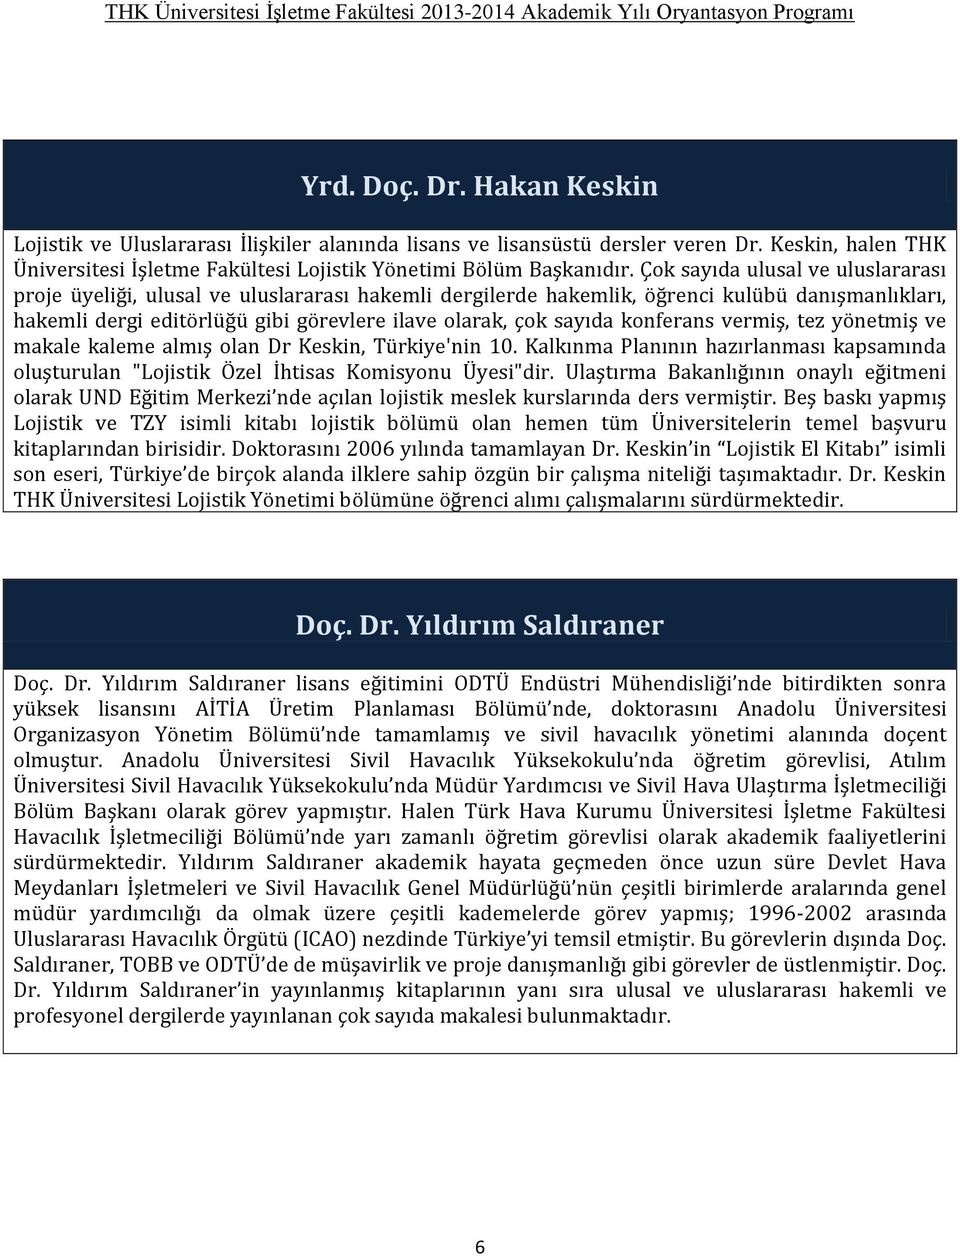 konferans vermiş, tez yönetmiş ve makale kaleme almış olan Dr Keskin, Türkiye'nin 10. Kalkınma Planının hazırlanması kapsamında oluşturulan "Lojistik Özel İhtisas Komisyonu Üyesi"dir.